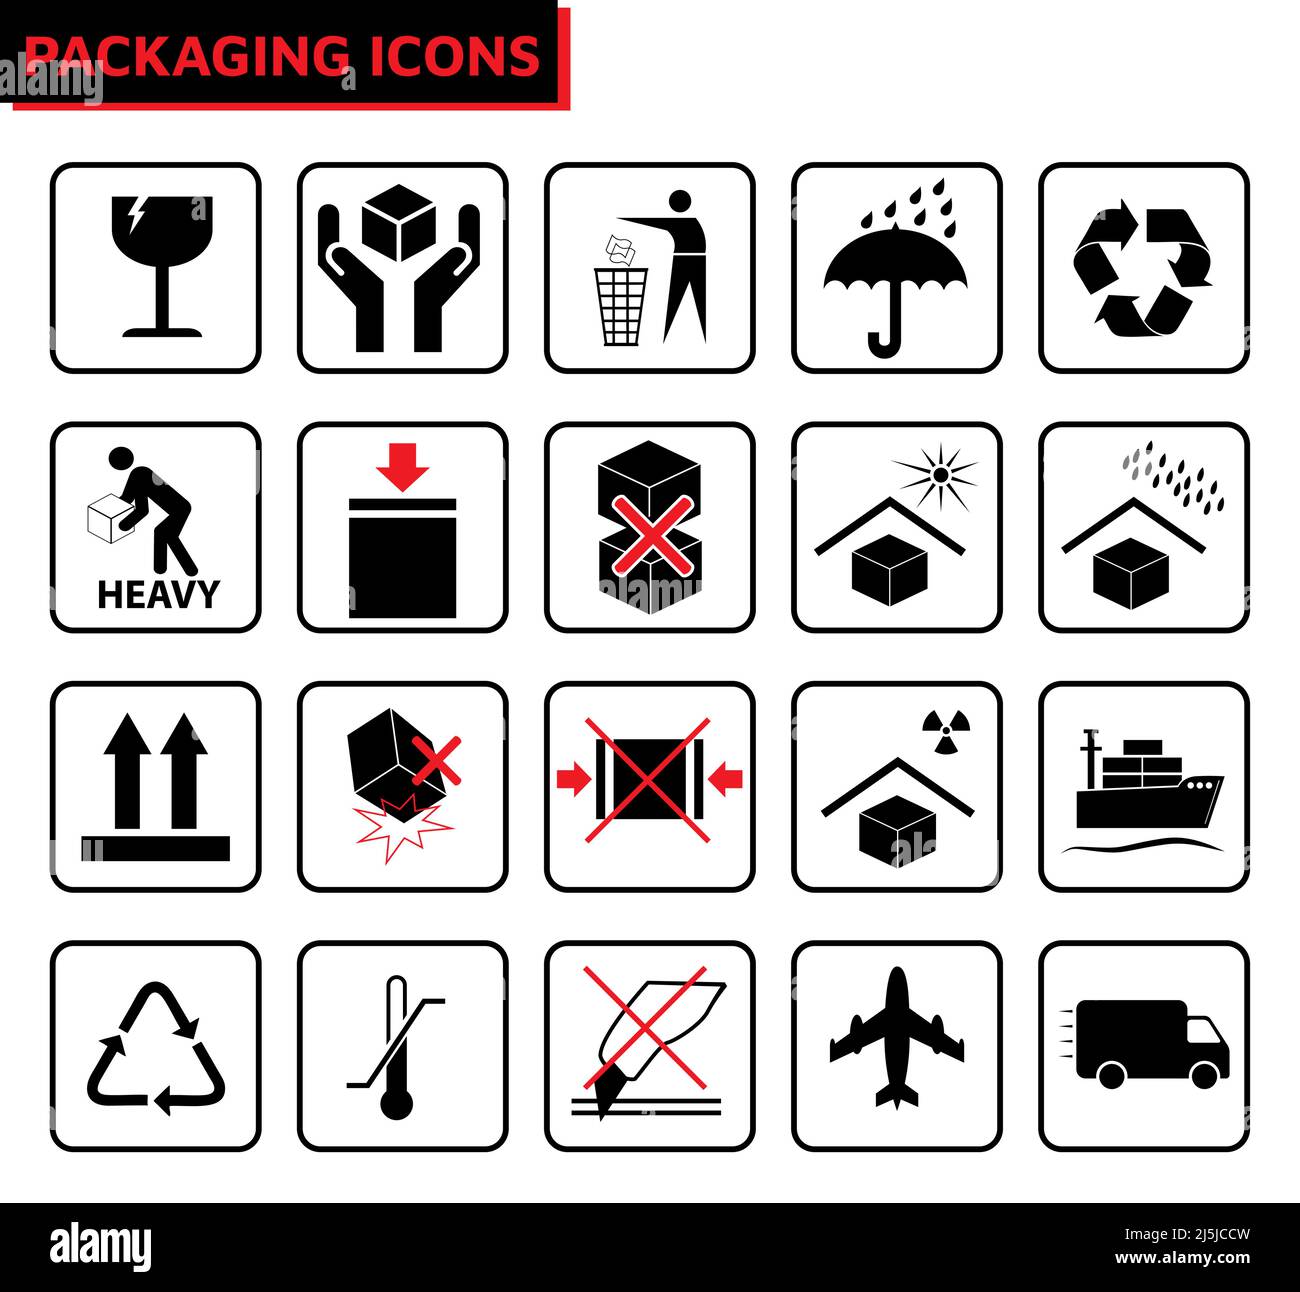 Icona vettoriale dei simboli dei segni di imballaggio impostata in nero e rosso Illustrazione Vettoriale